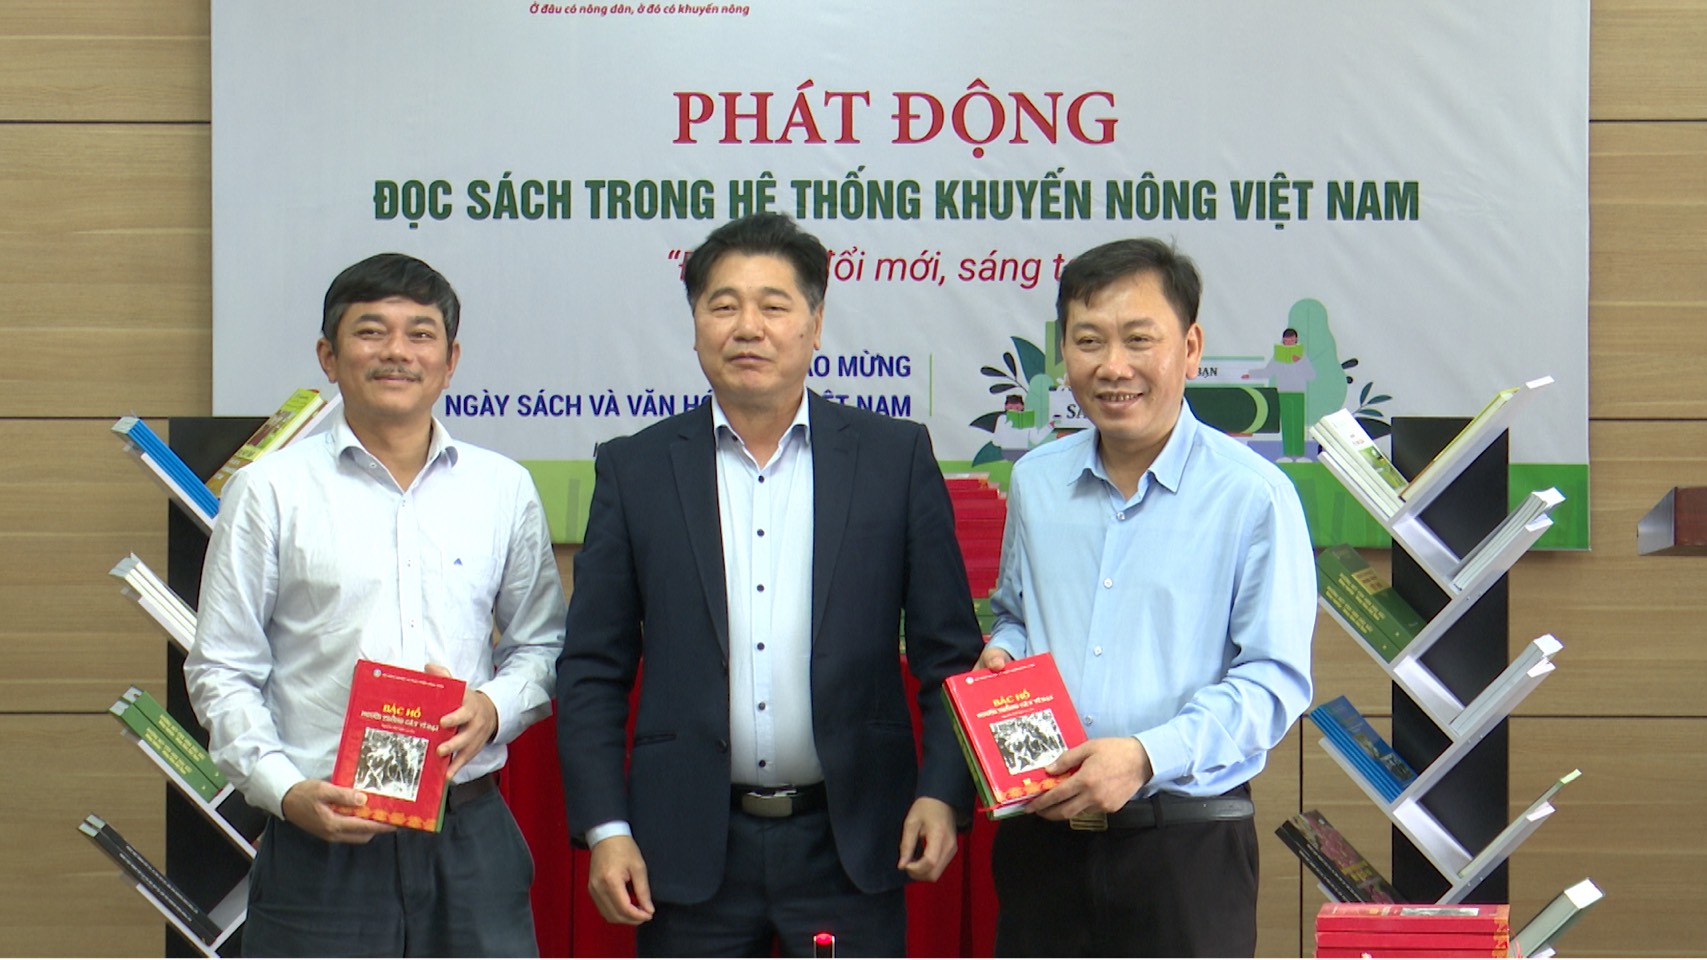 Phát động đọc sách trong hệ thống Khuyến nông Việt Nam: Tích luỹ kiến thức, thay đổi chính mình - Ảnh 5.